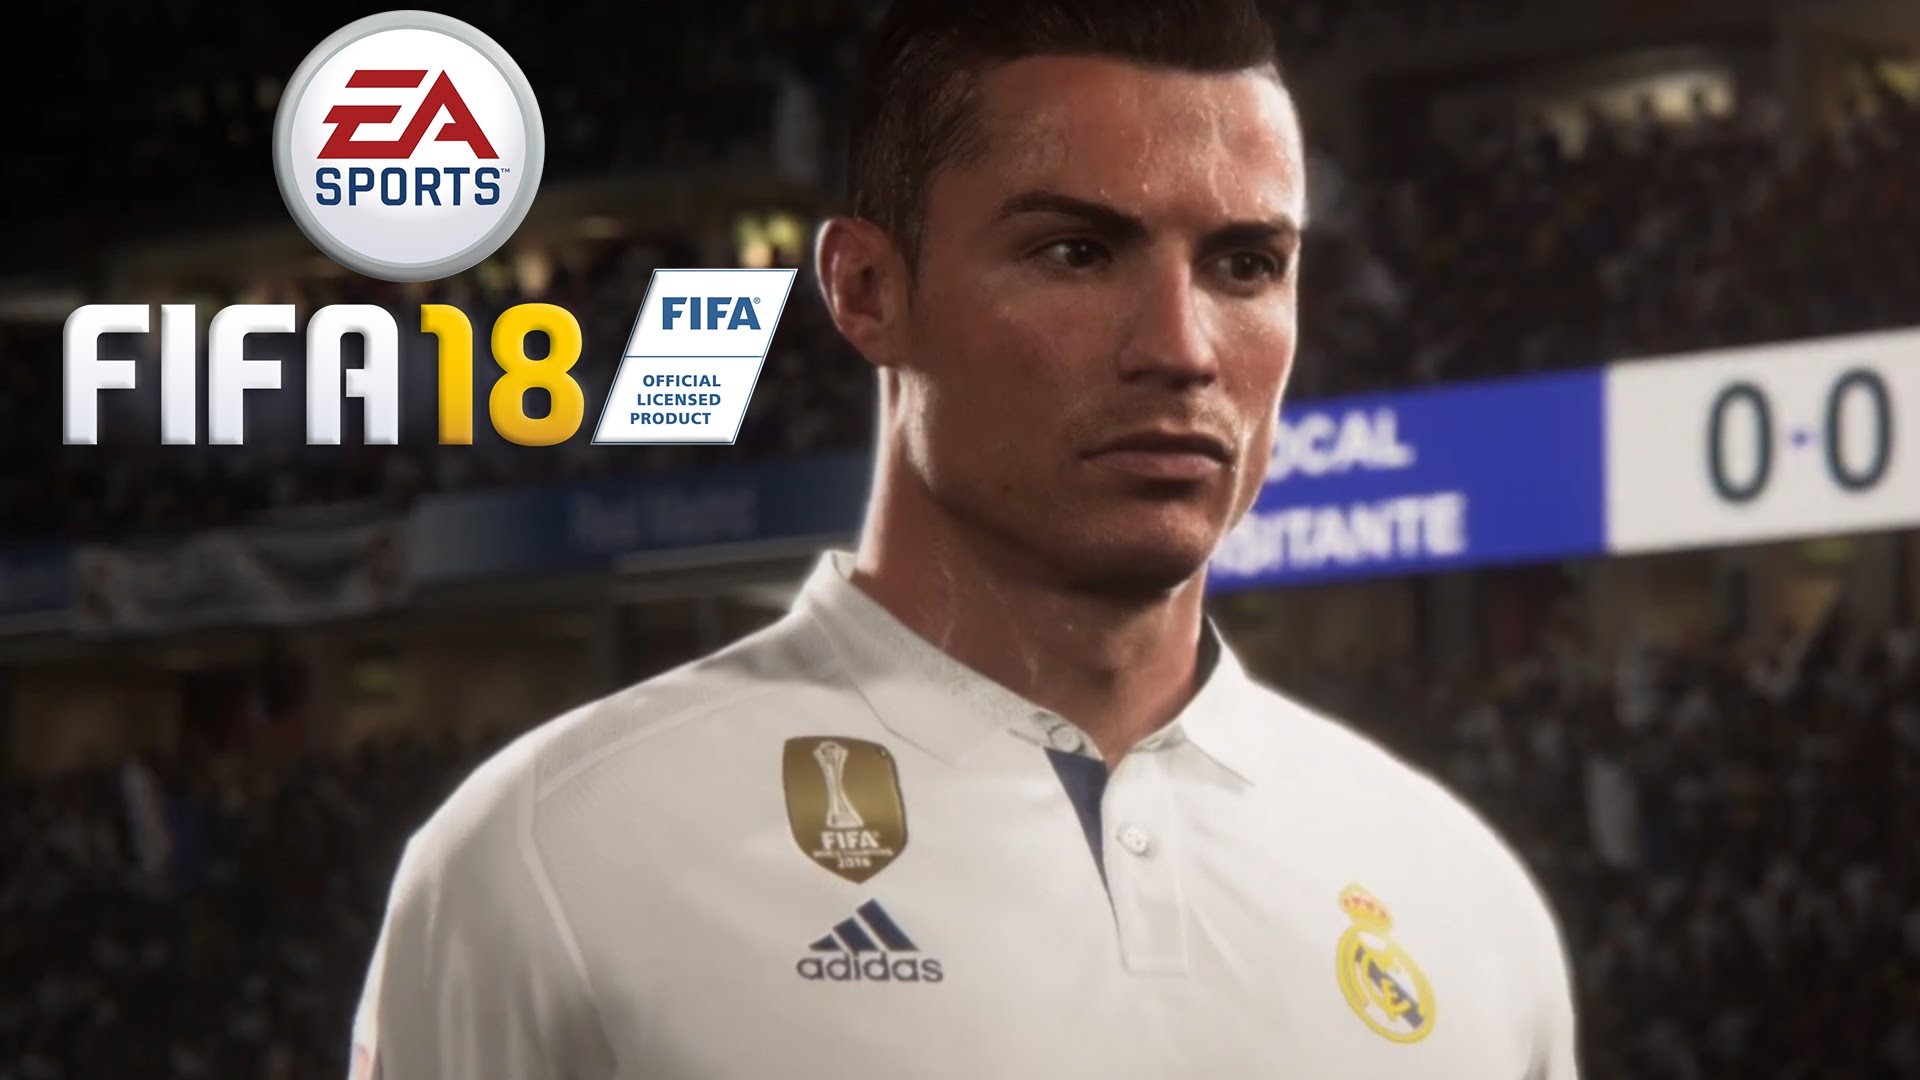 FIFA 18 – Cristiano Ronaldo Trailer